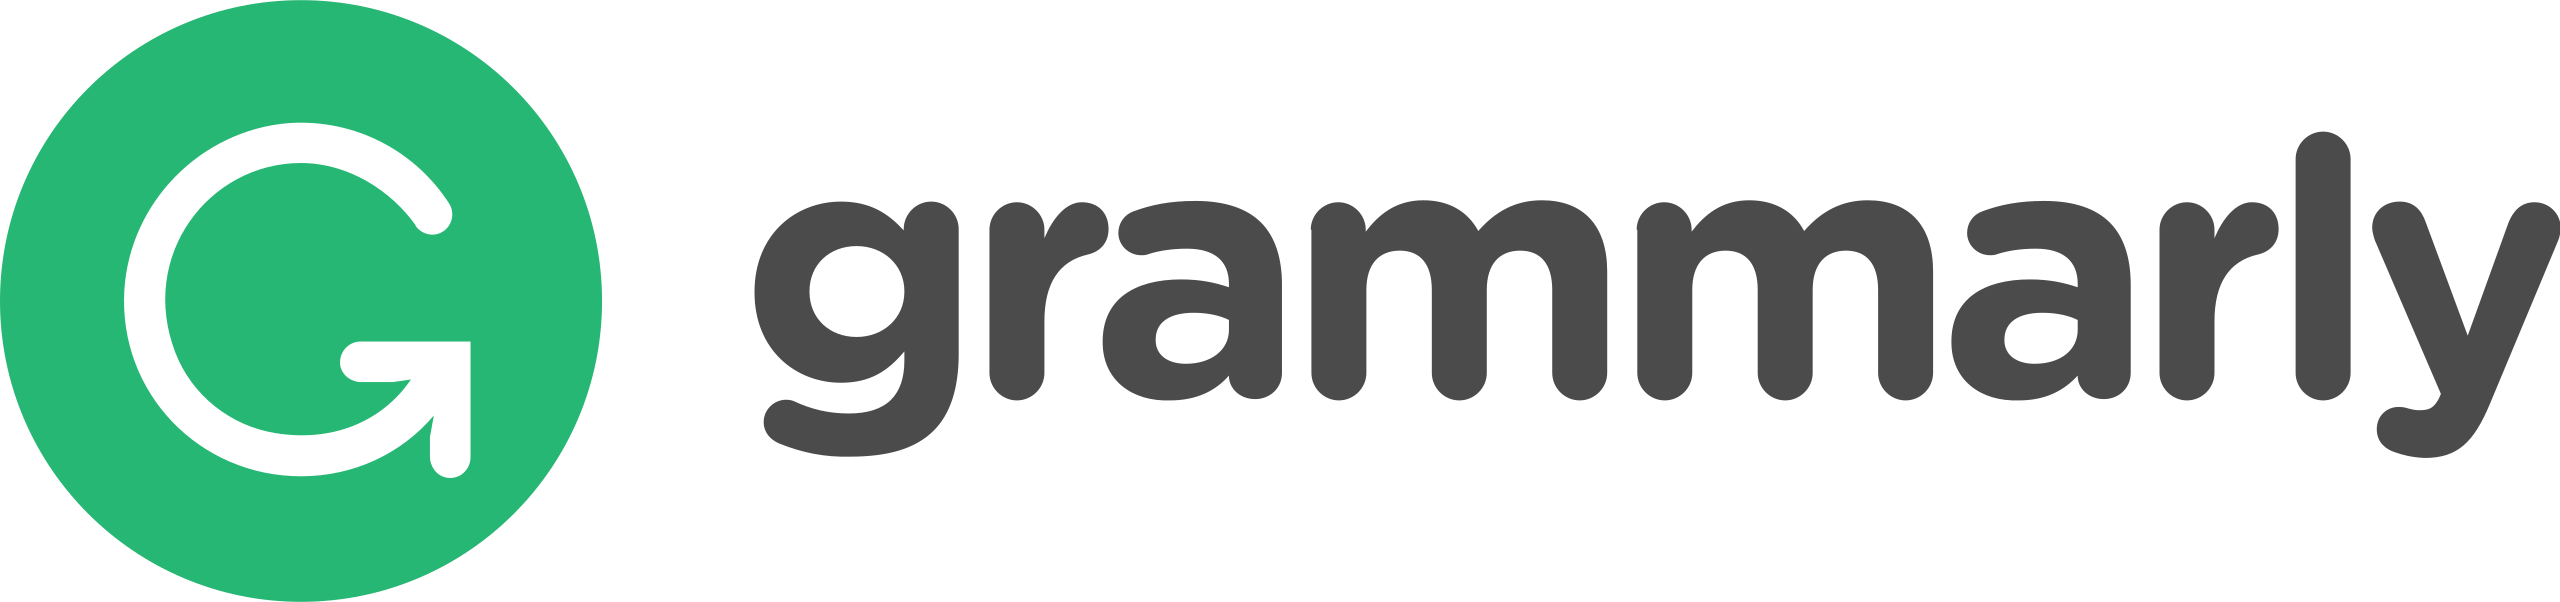 grammarly logo